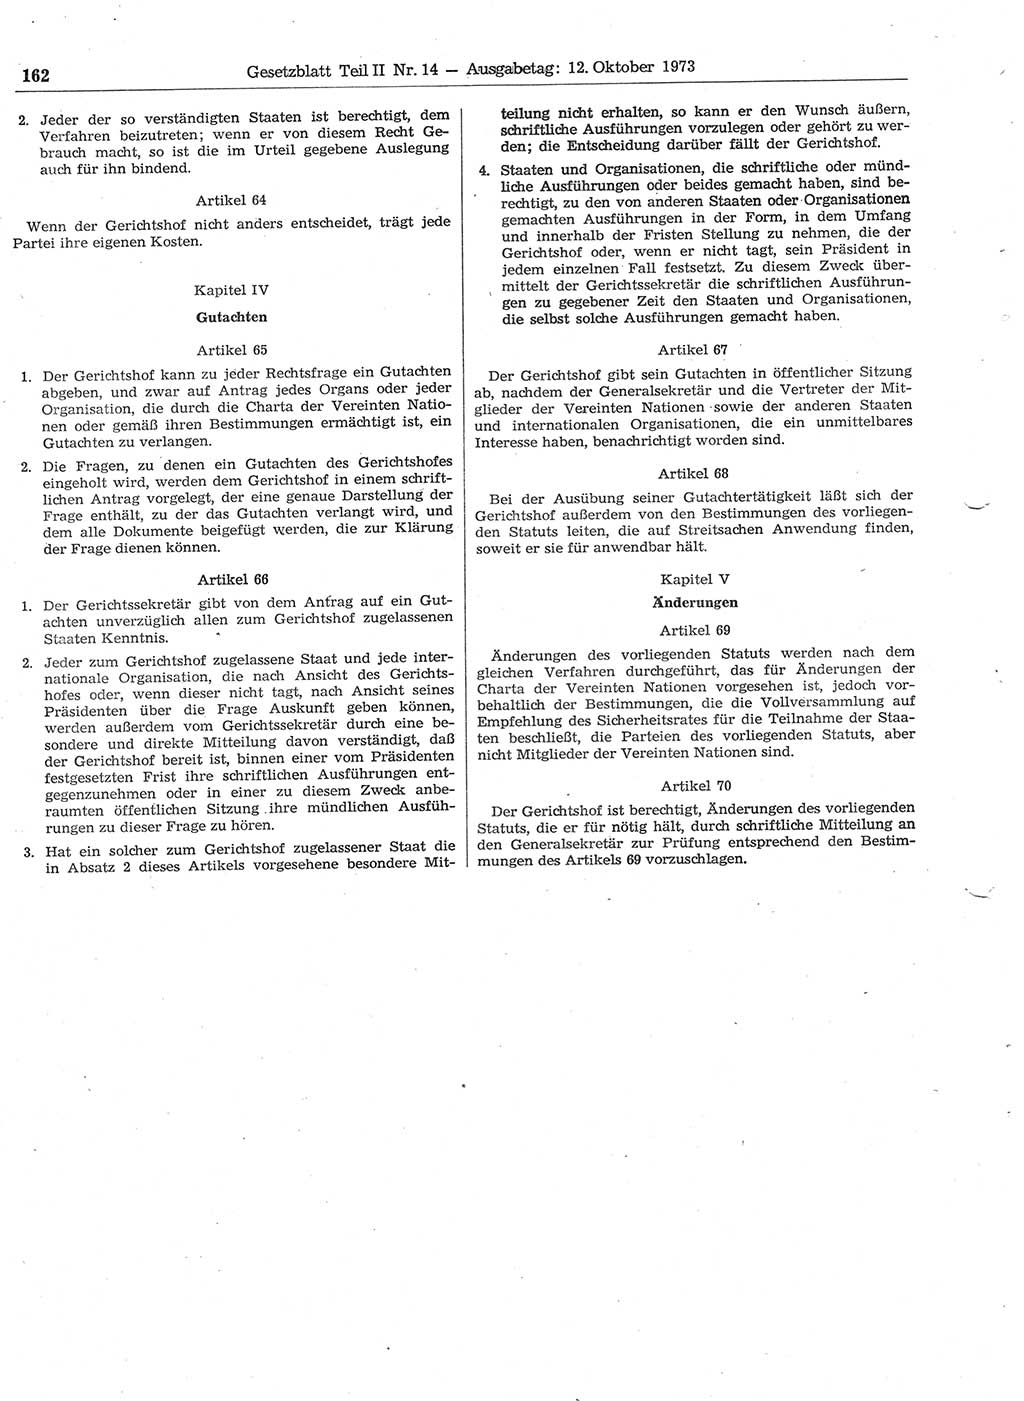 Gesetzblatt (GBl.) der Deutschen Demokratischen Republik (DDR) Teil ⅠⅠ 1973, Seite 162 (GBl. DDR ⅠⅠ 1973, S. 162)